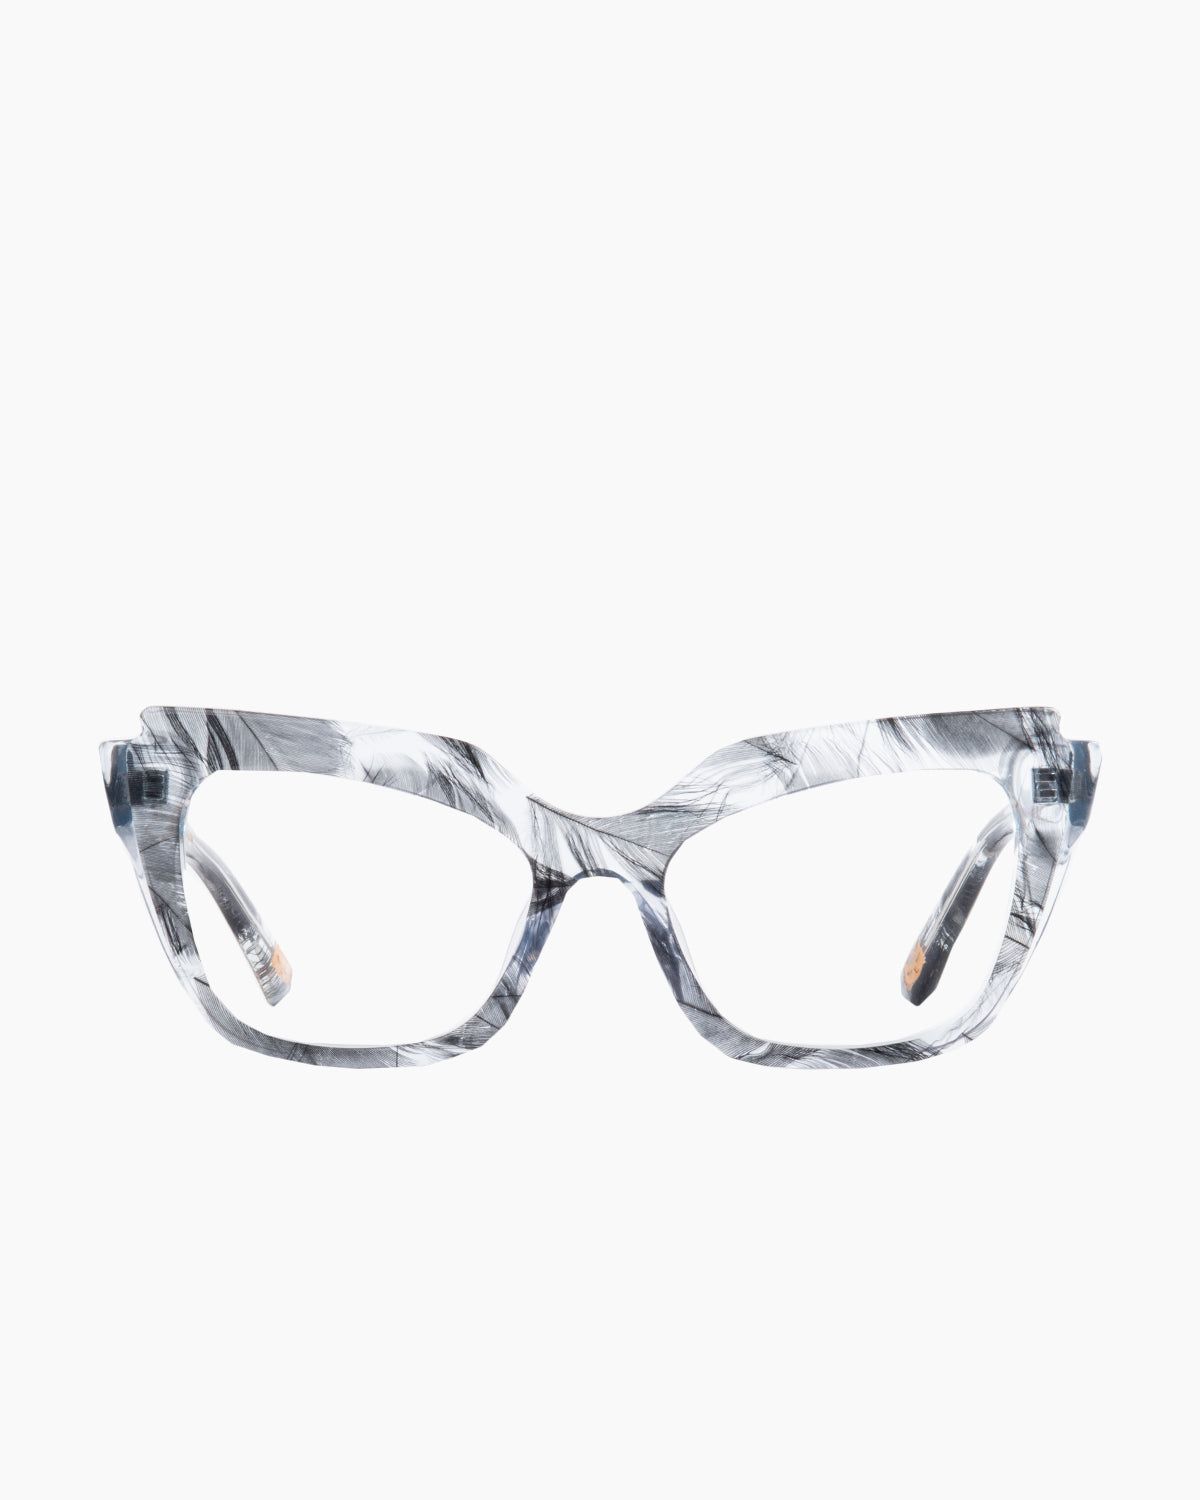 Spectacleeyeworks - Parisa - c459 | Bar à lunettes:  Marie-Sophie Dion